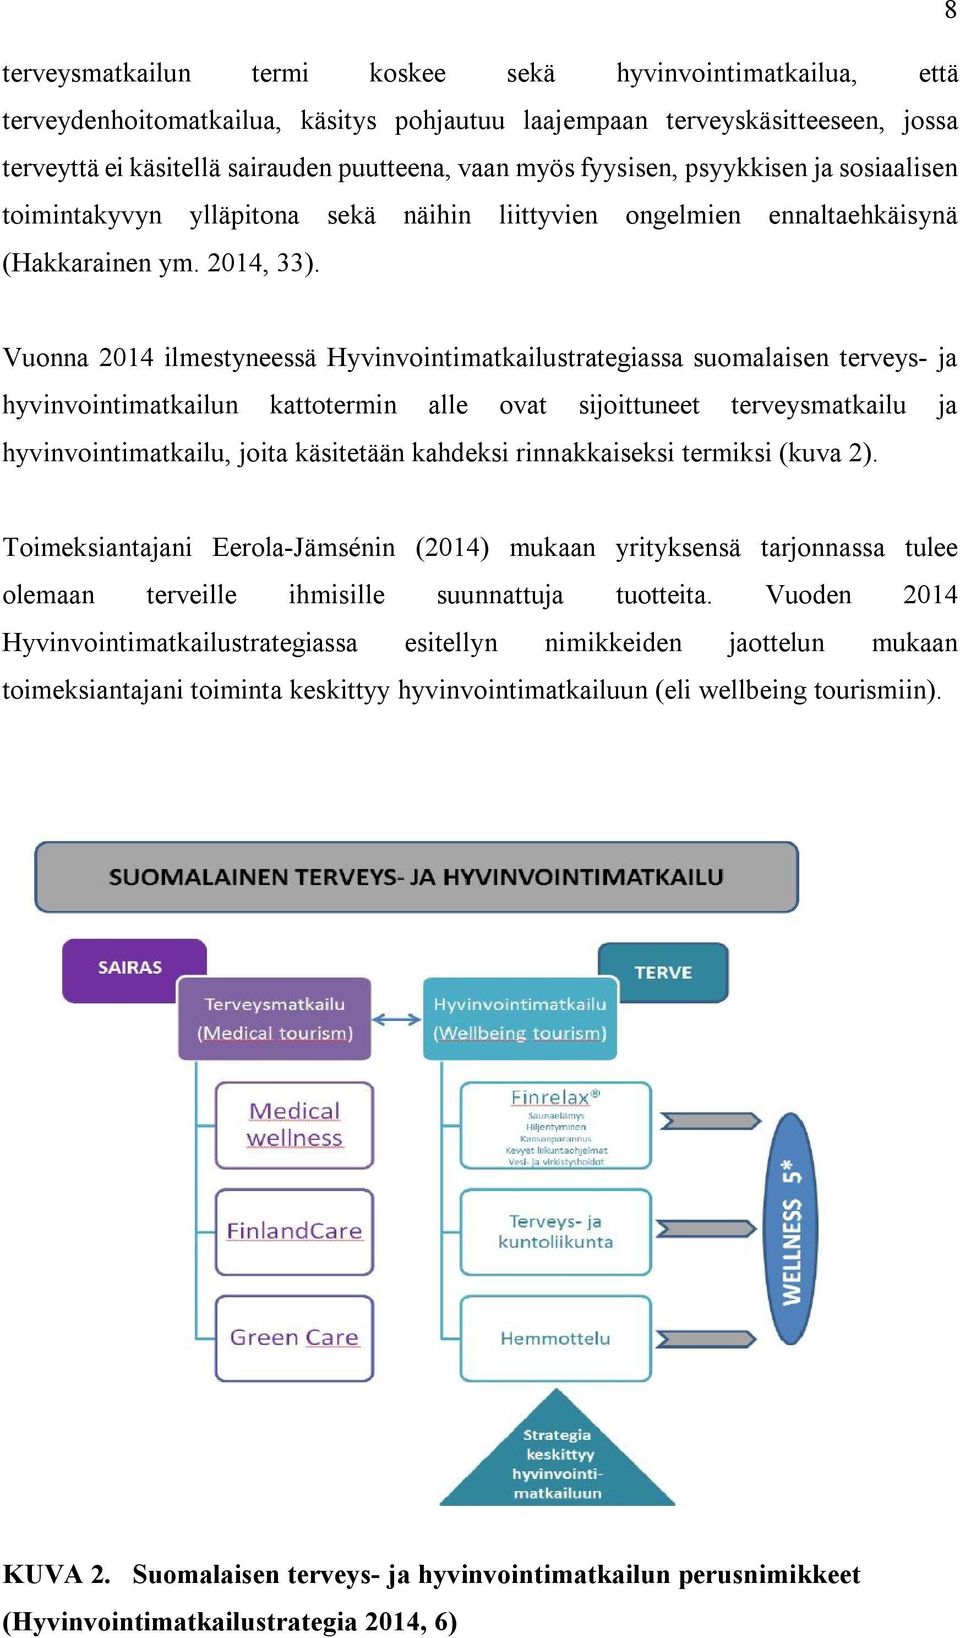 Vuonna 2014 ilmestyneessä Hyvinvointimatkailustrategiassa suomalaisen terveys- ja hyvinvointimatkailun kattotermin alle ovat sijoittuneet terveysmatkailu ja hyvinvointimatkailu, joita käsitetään